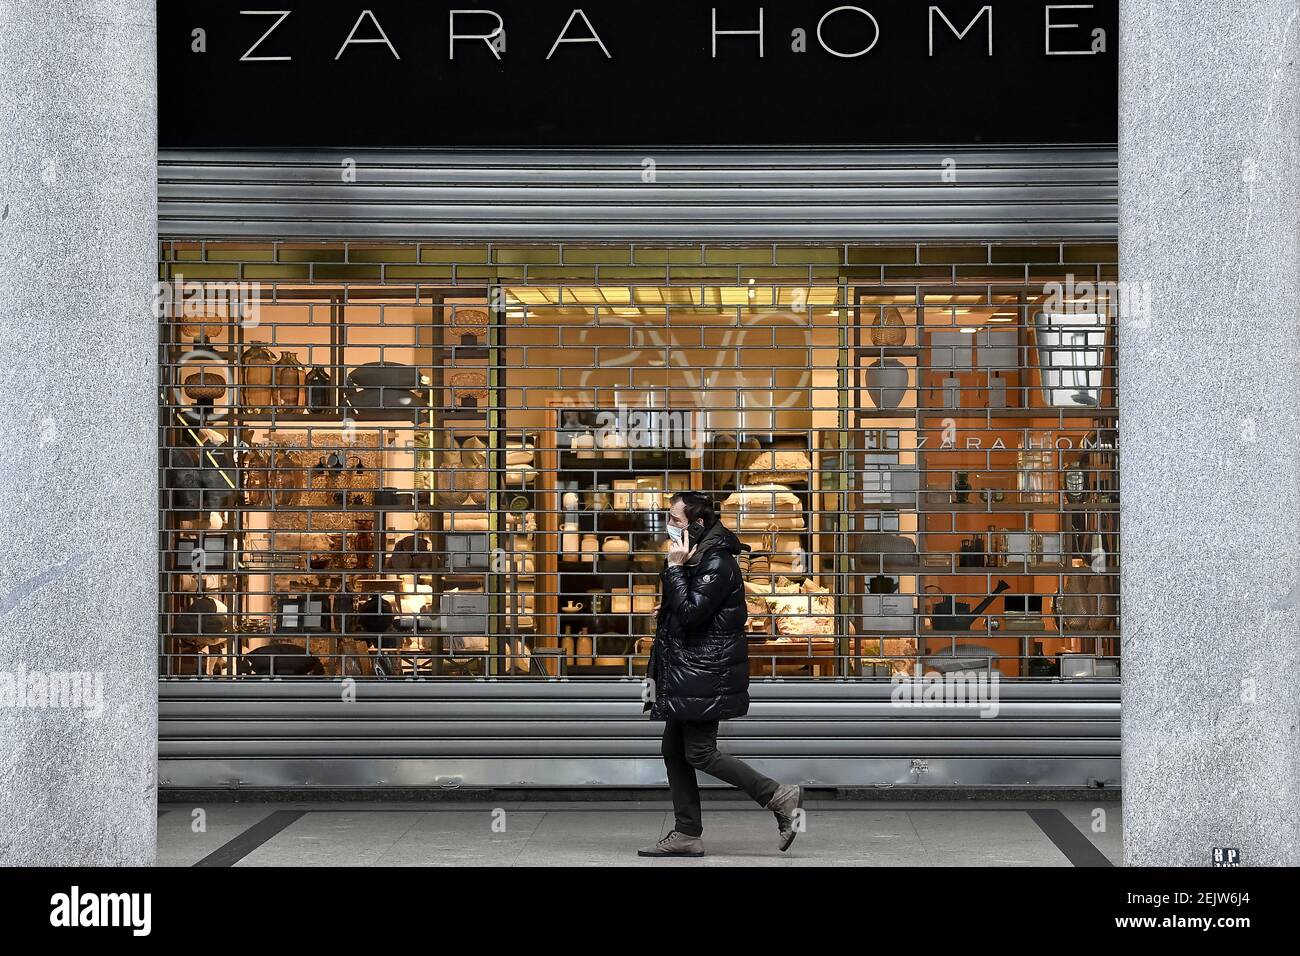 TURIN, ITALIE - 12 mars 2020 : un homme portant un masque respiratoire  passe devant un magasin Zara Home. Le gouvernement italien a fermé la  majorité des magasins pour stopper la propagation